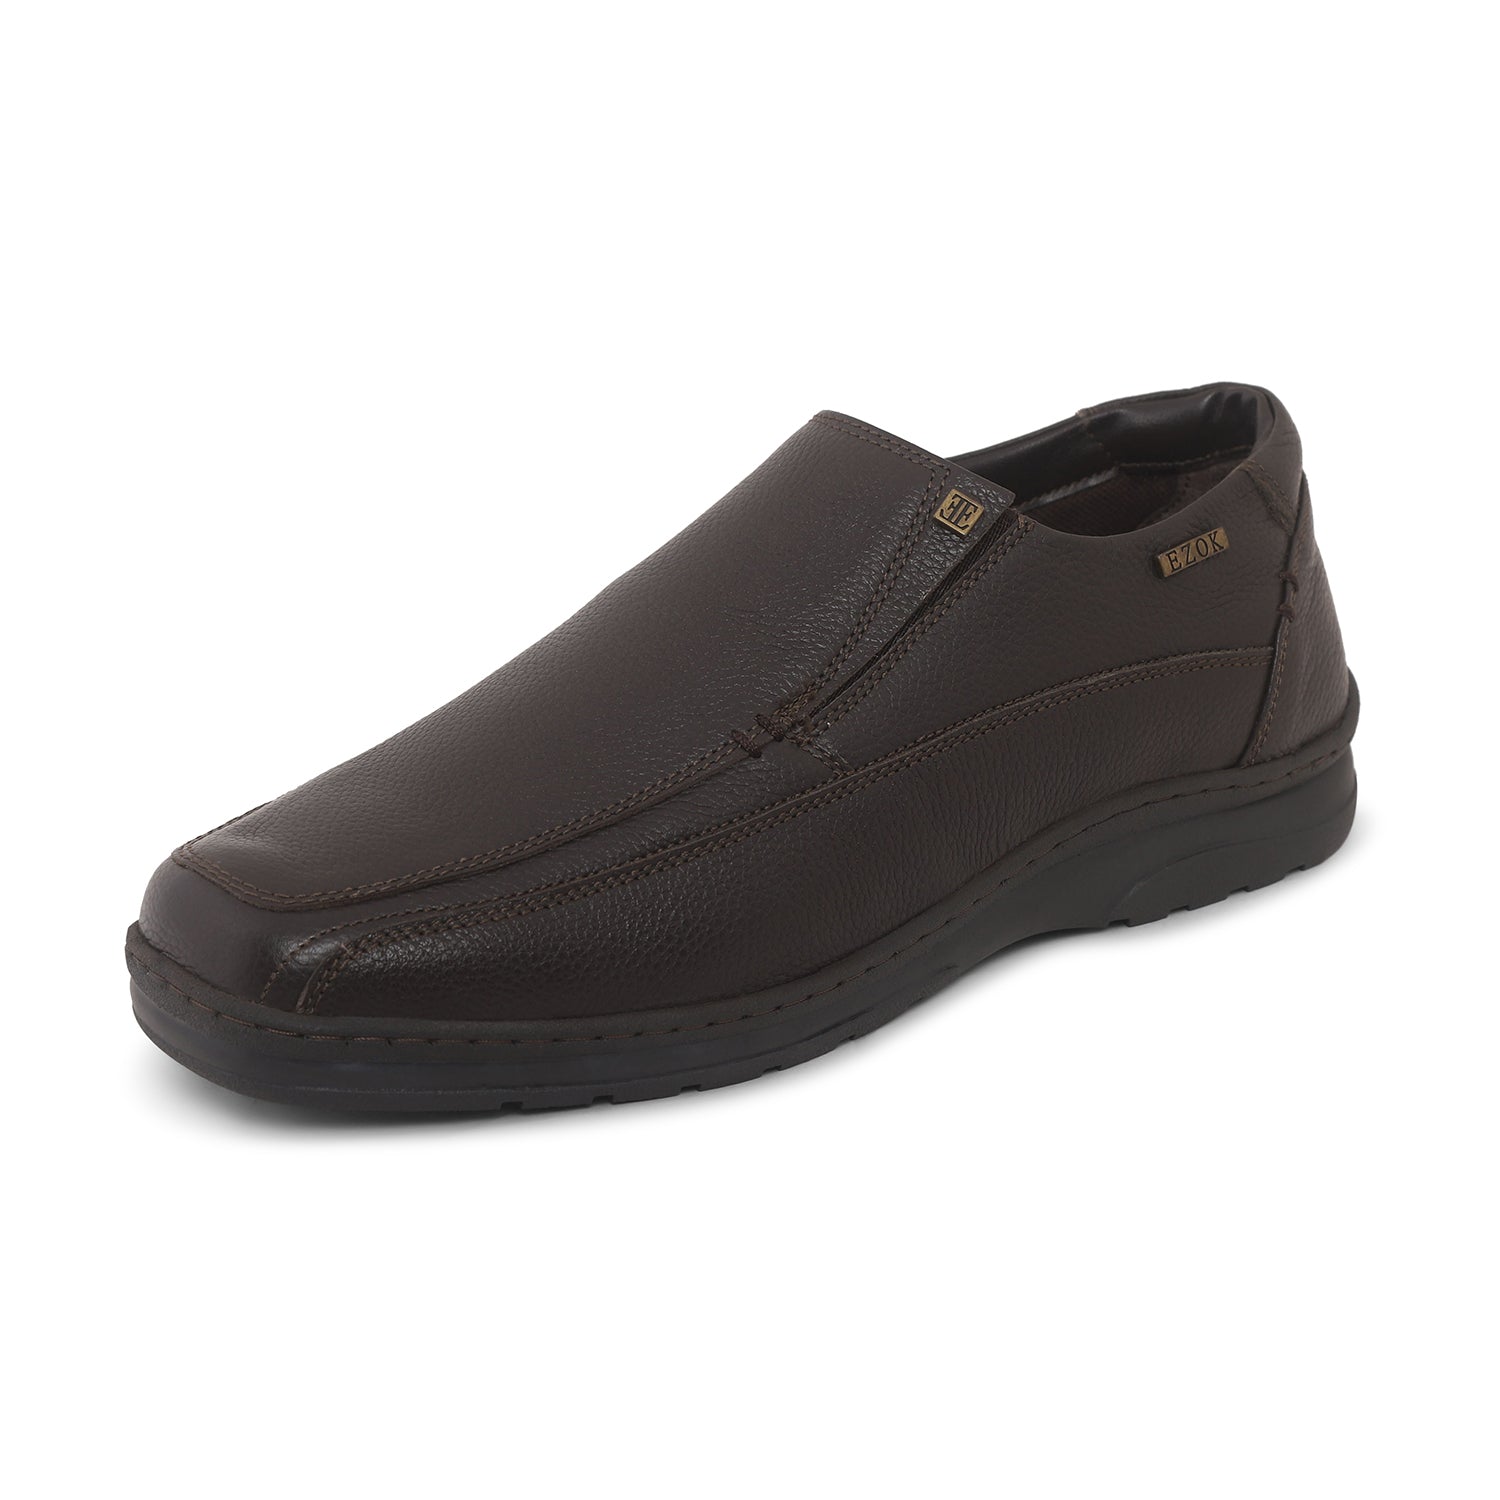 Ezok Brown Leather Slipon Shoes